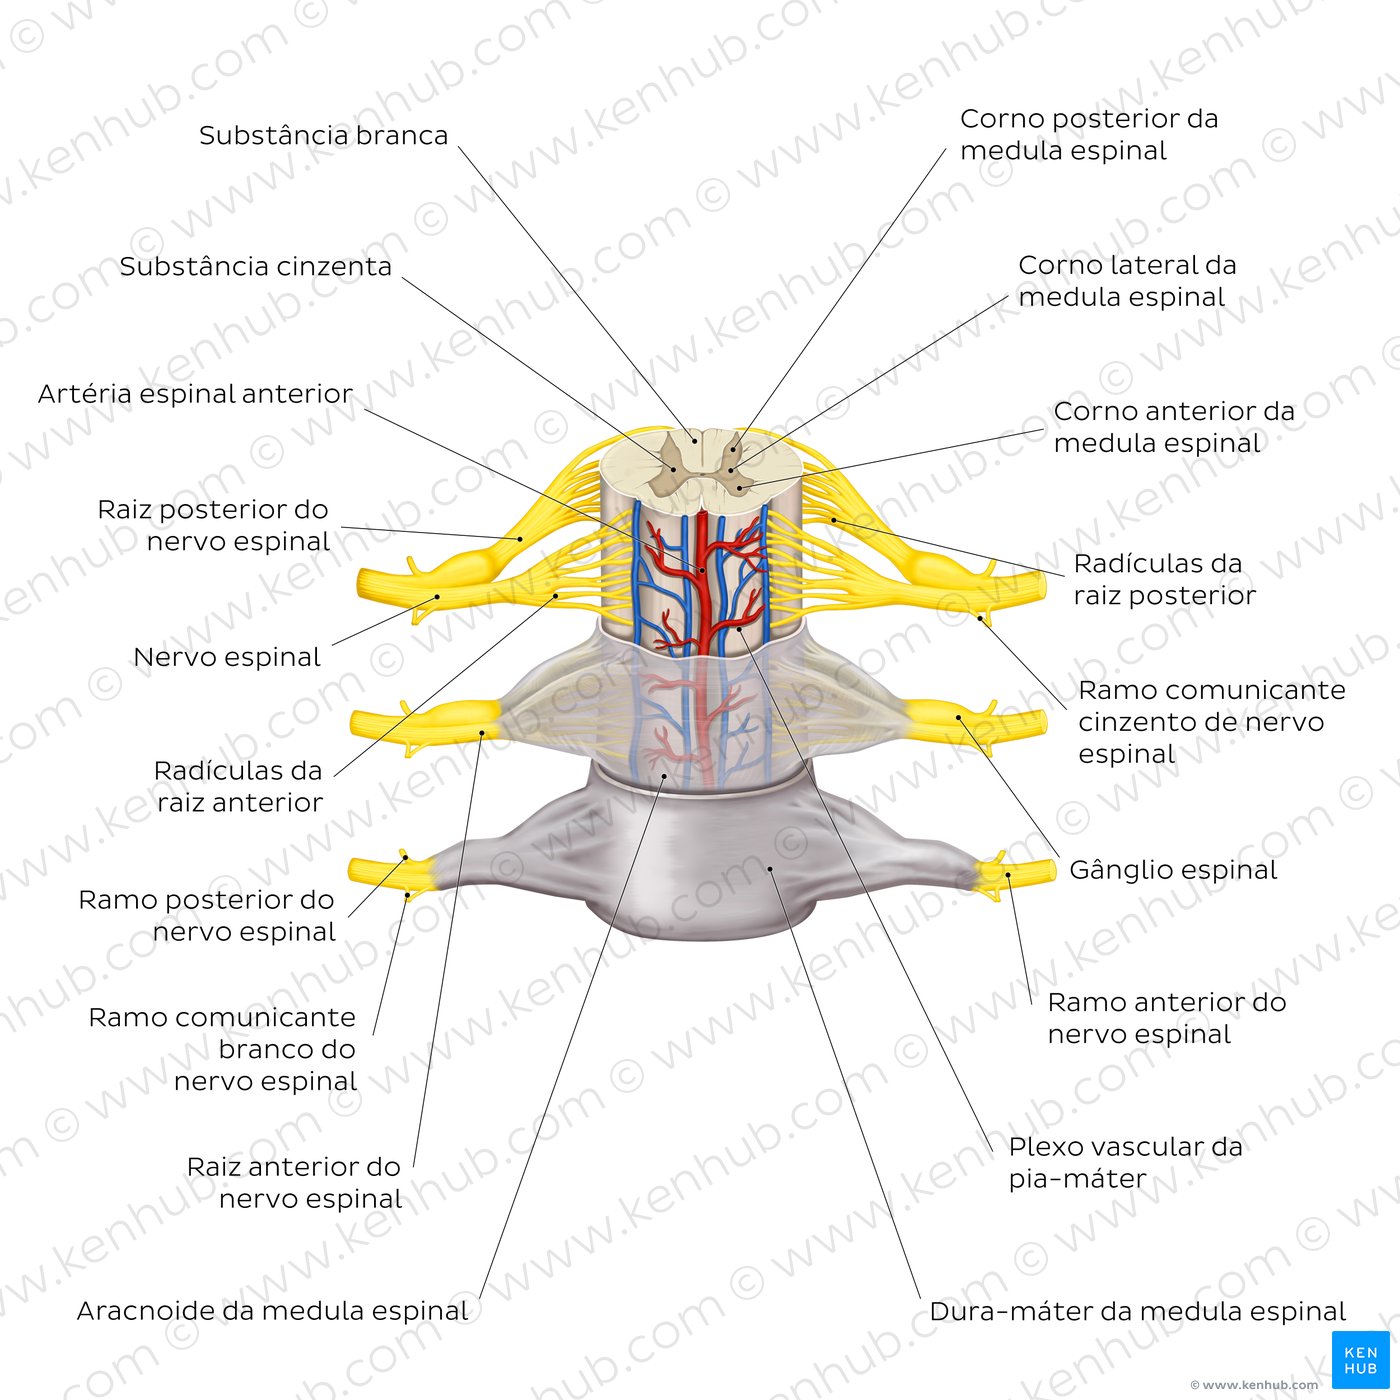 Revestimento meníngeo da medula espinal e nervos espinais